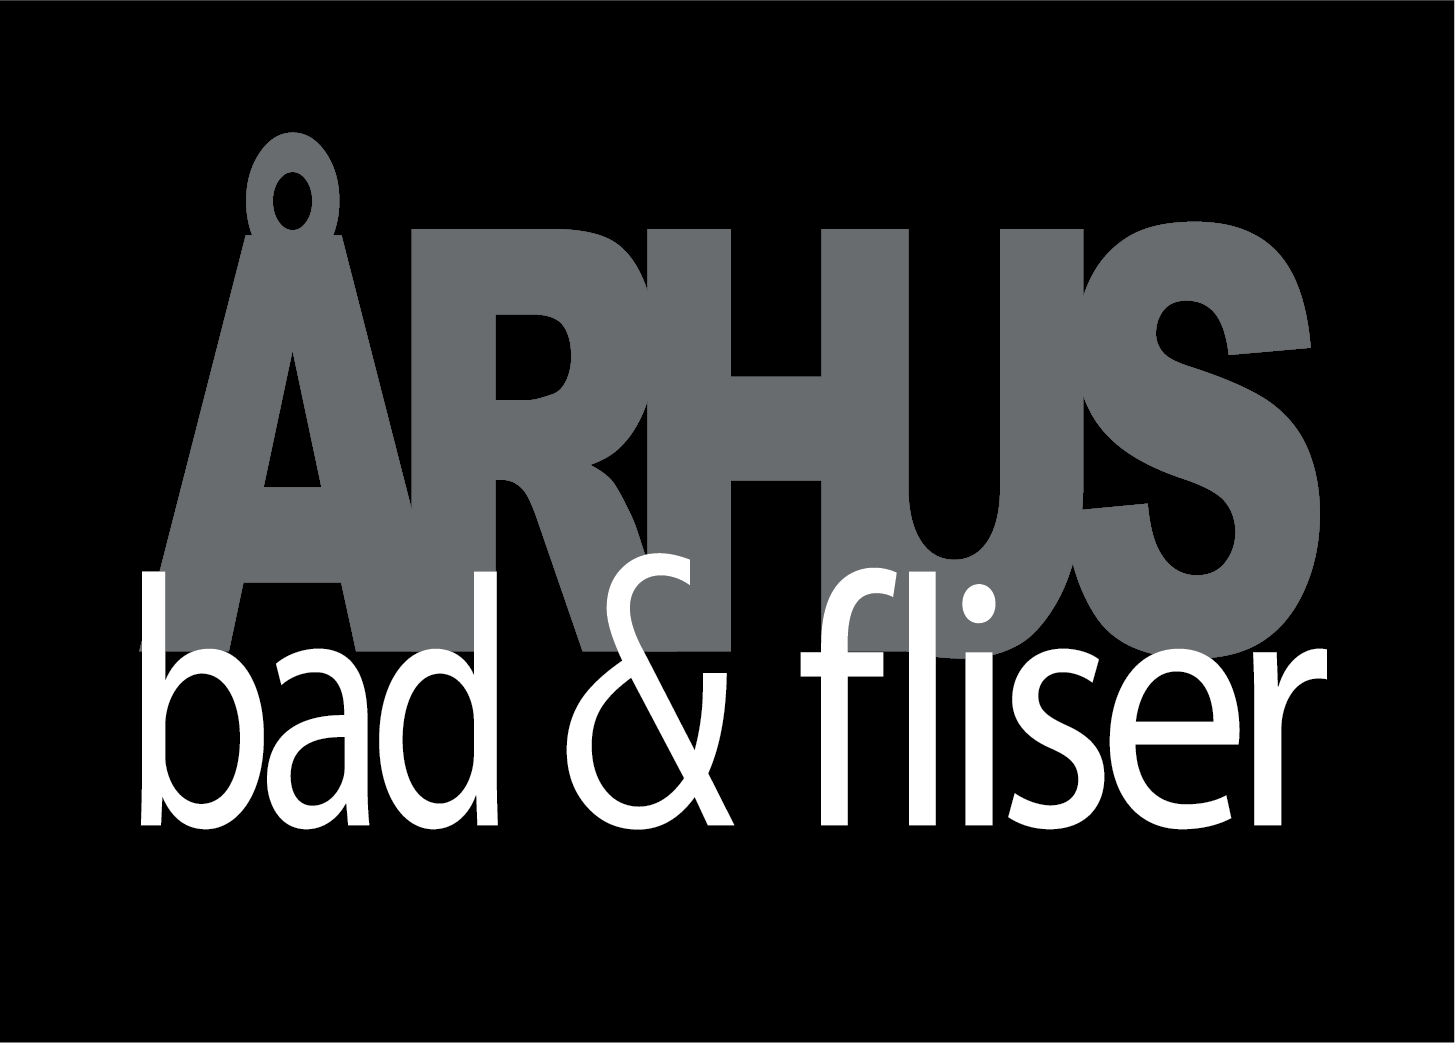 Århus Bad & Fliser